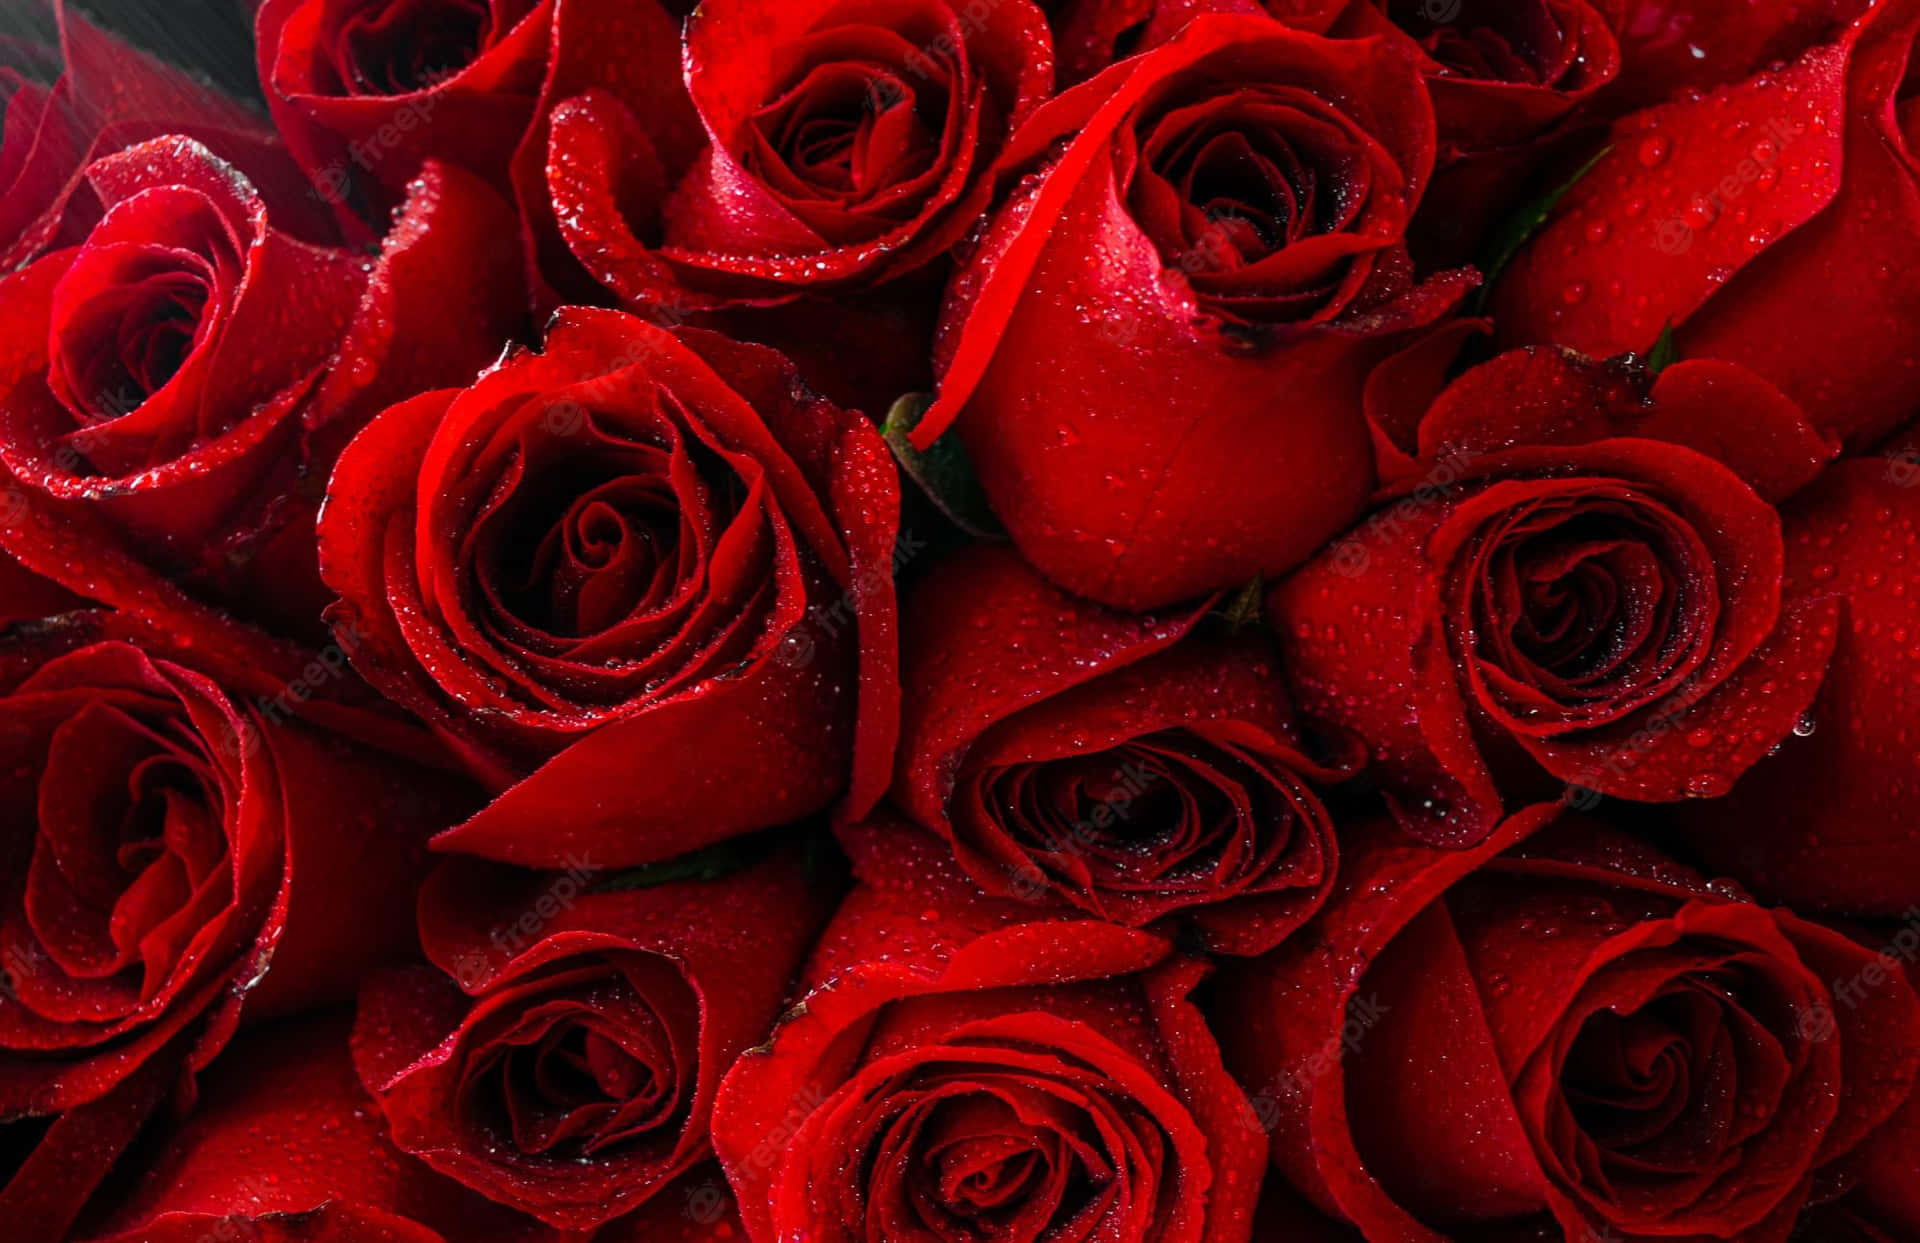 Livlige og romantiske roser med en frisk duft. Wallpaper